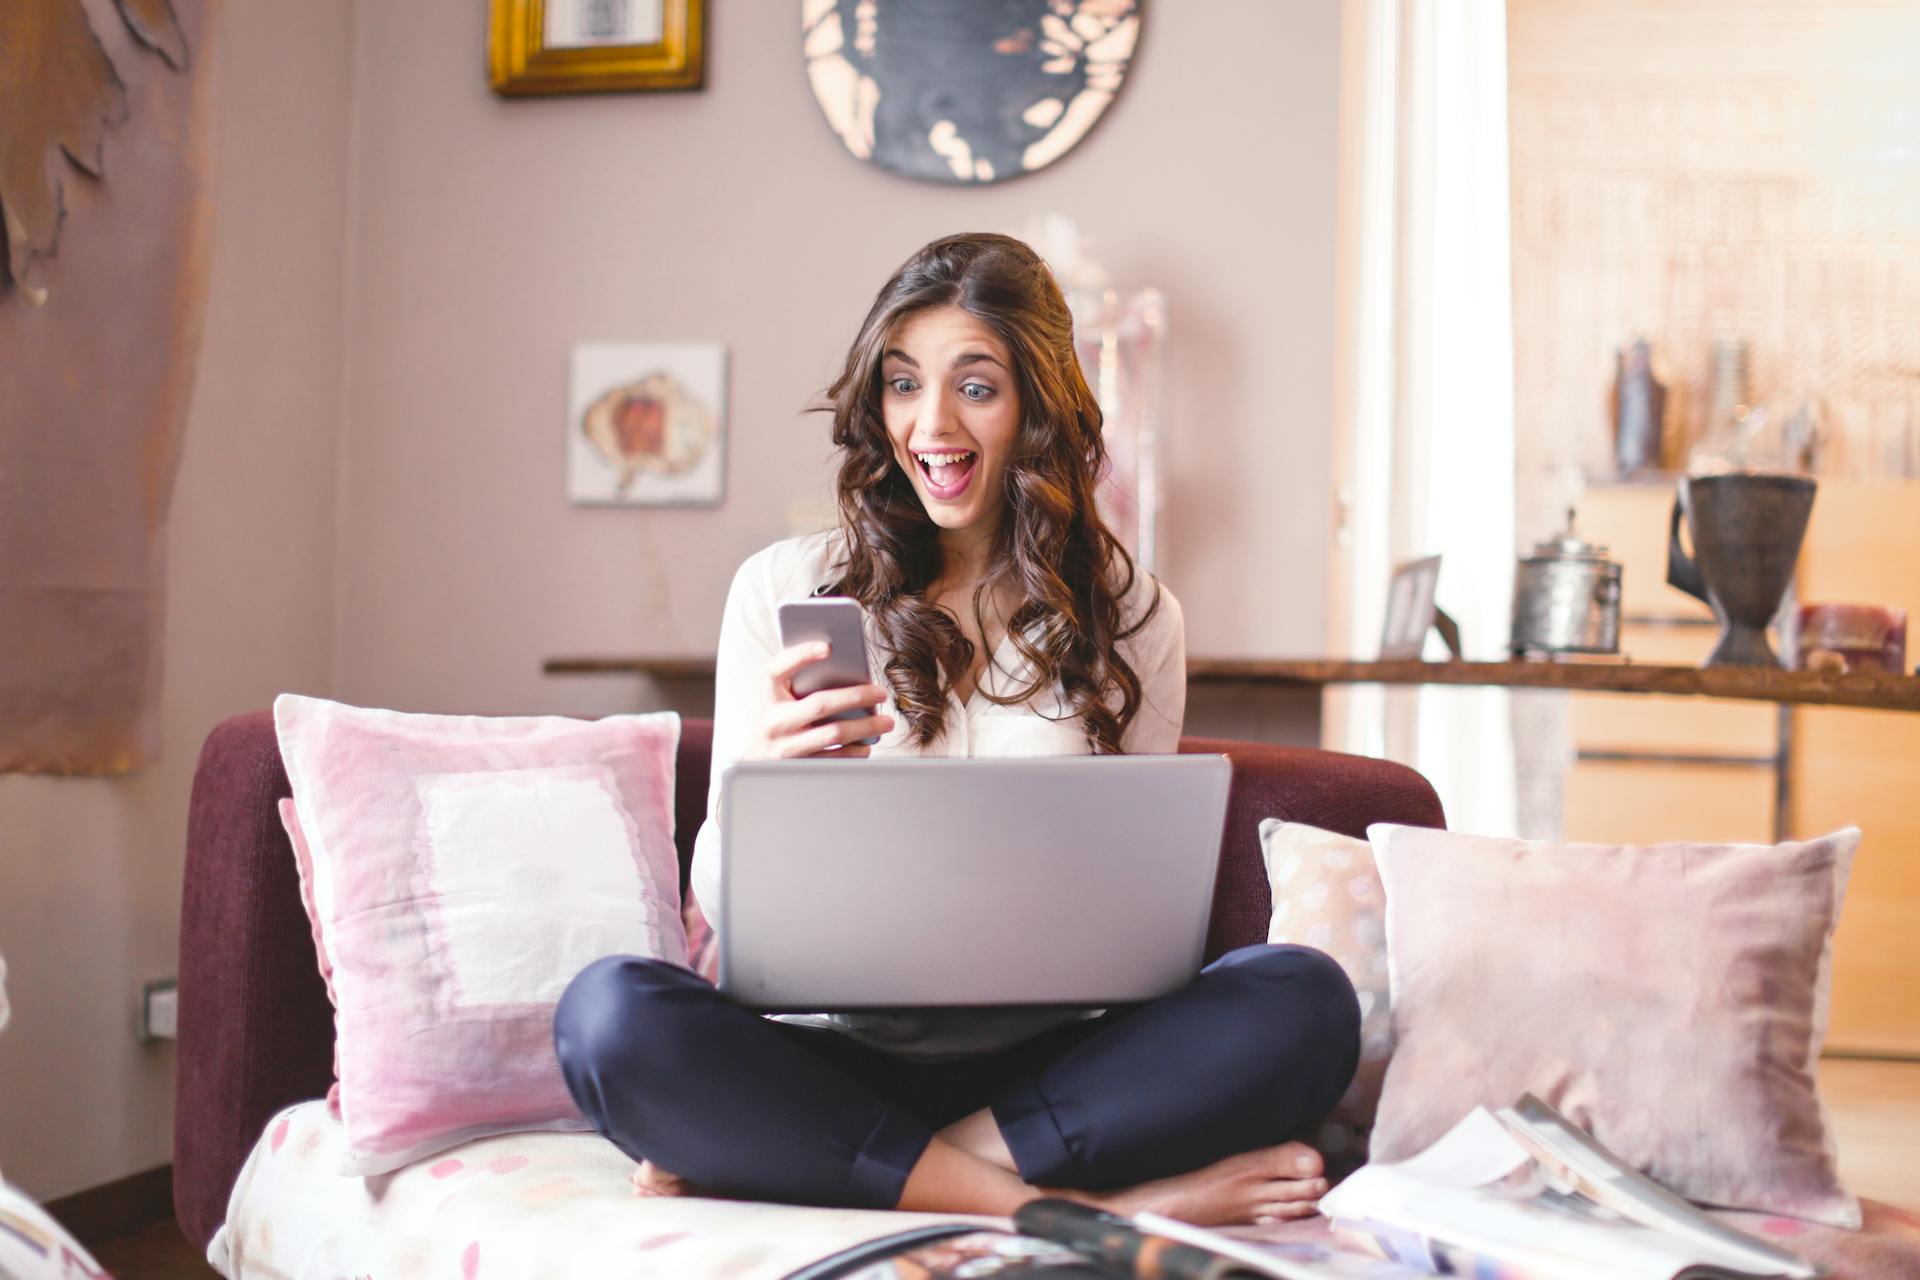 smartfon laptop kobieta woman szczęście happy happiness surprised niespodzianka szok shocked